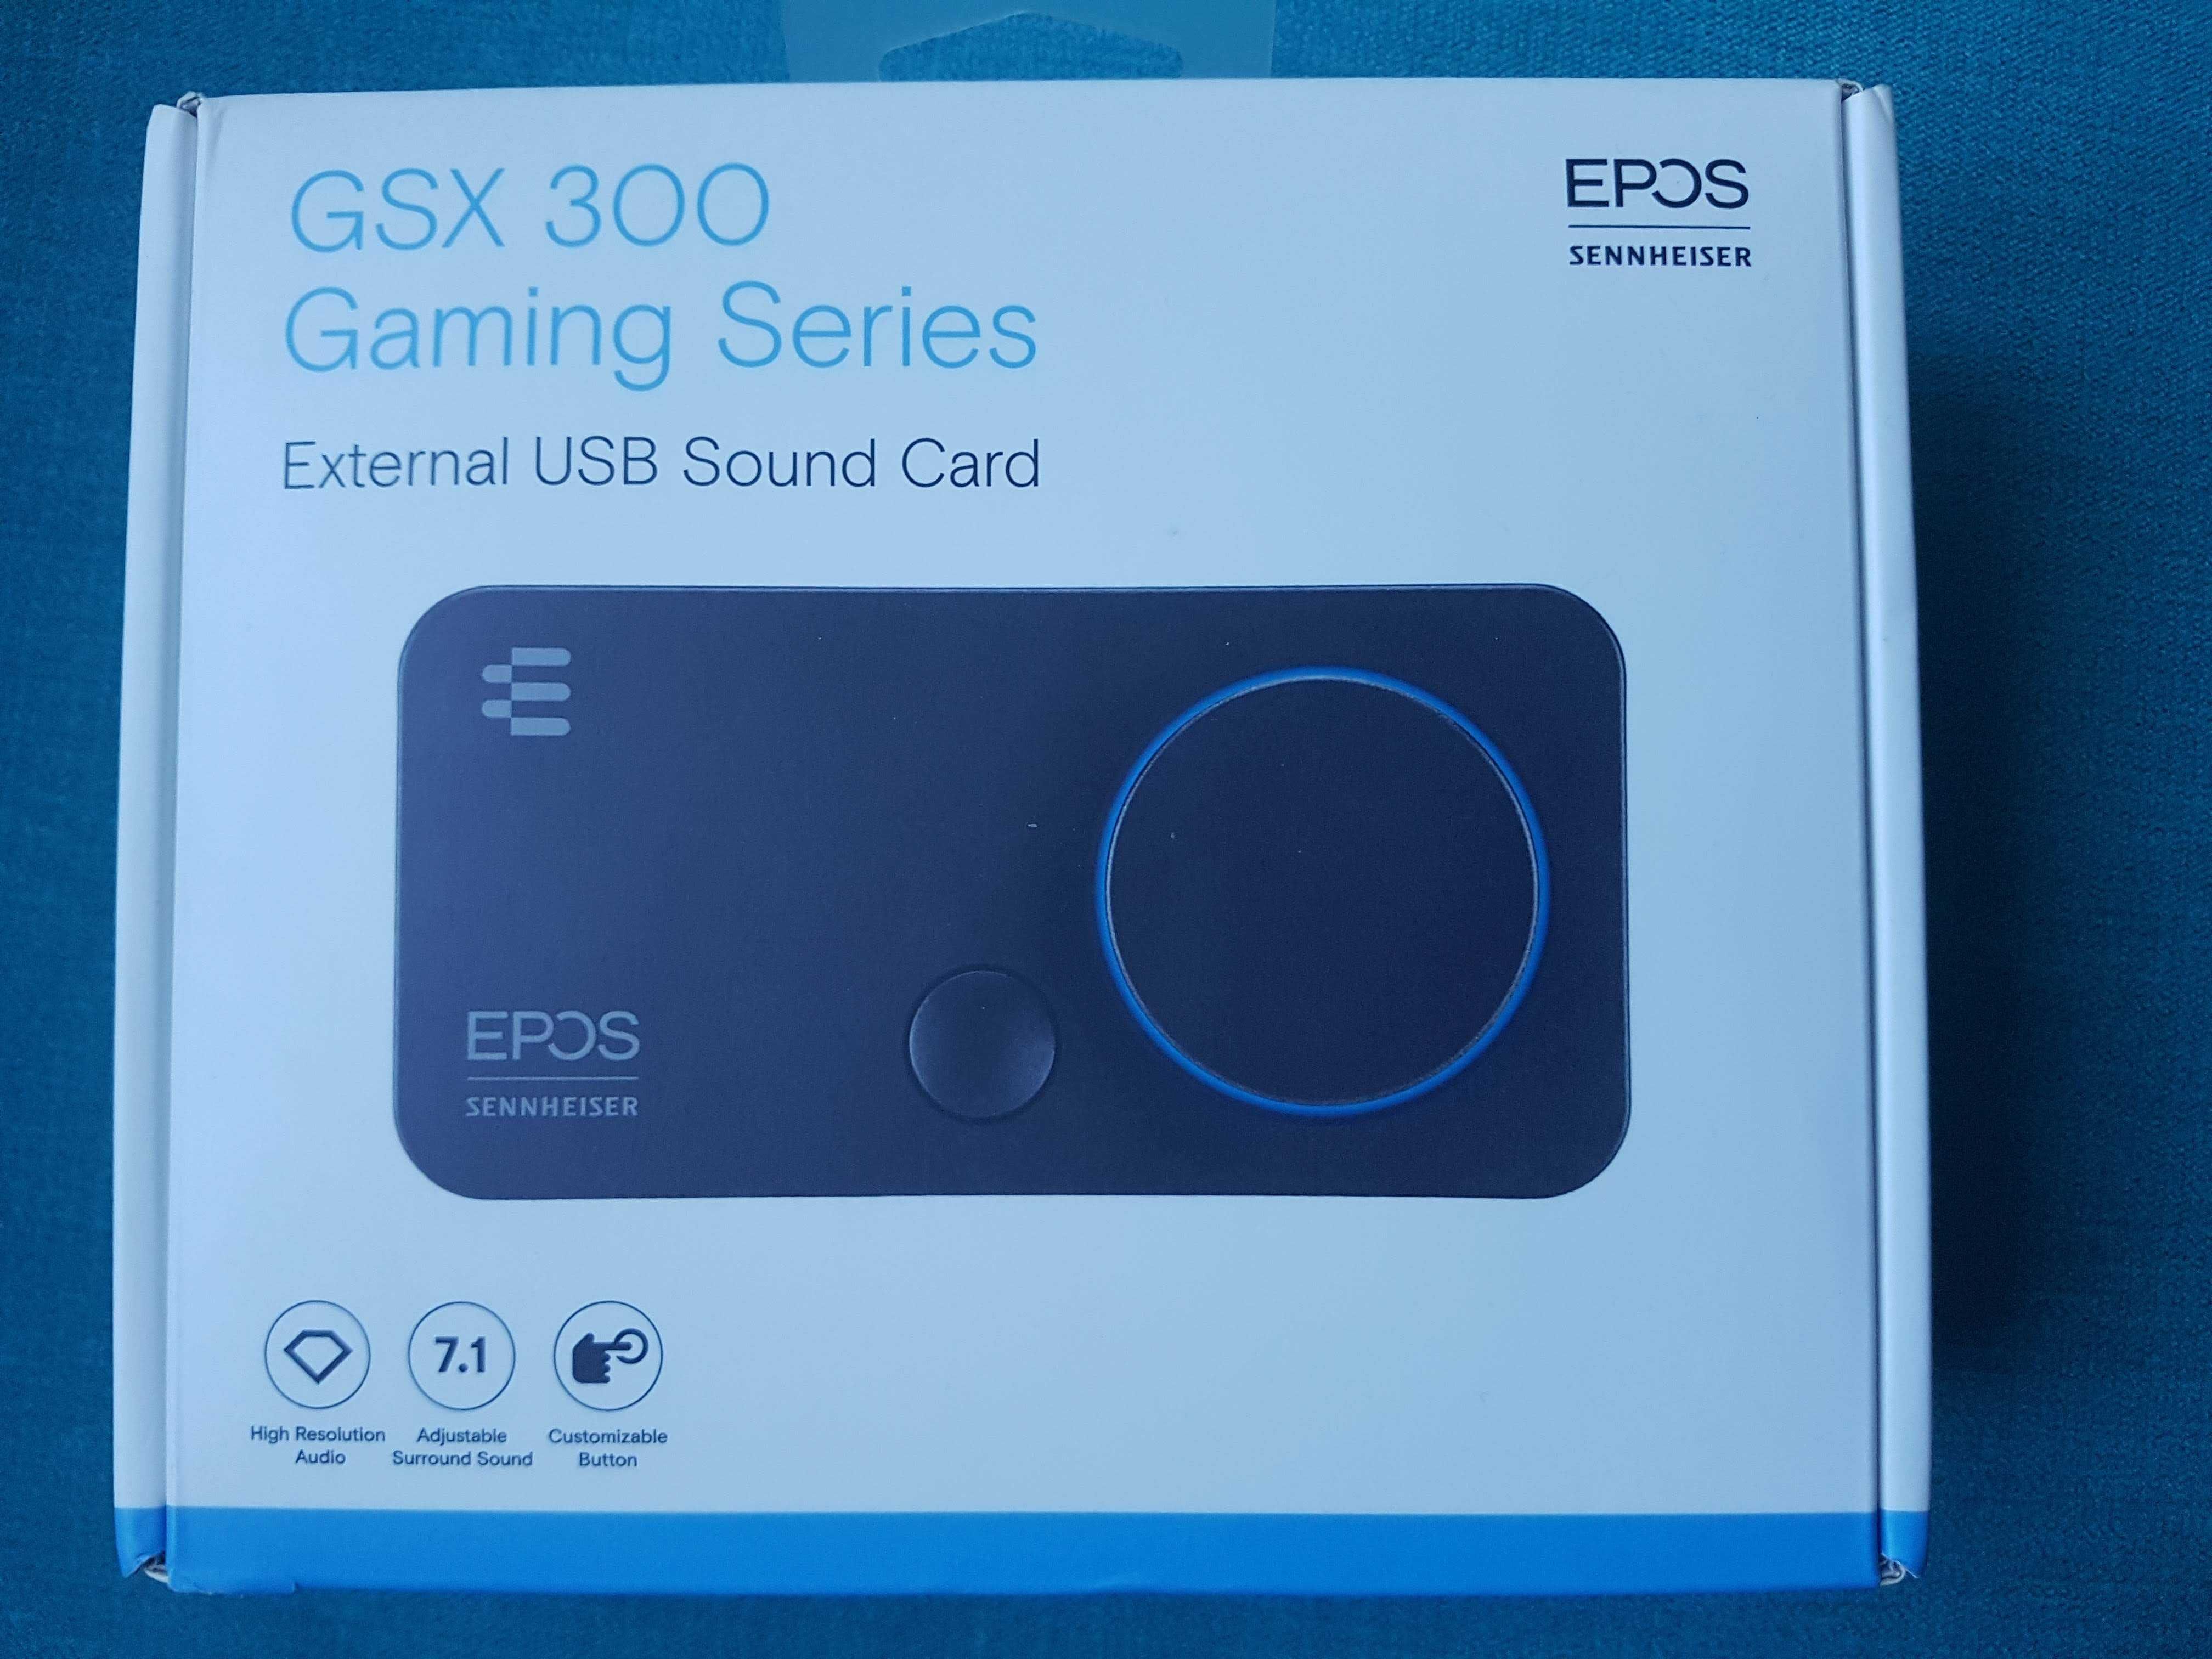 външна звукова карта EPOS GSX 300 Gaming Series